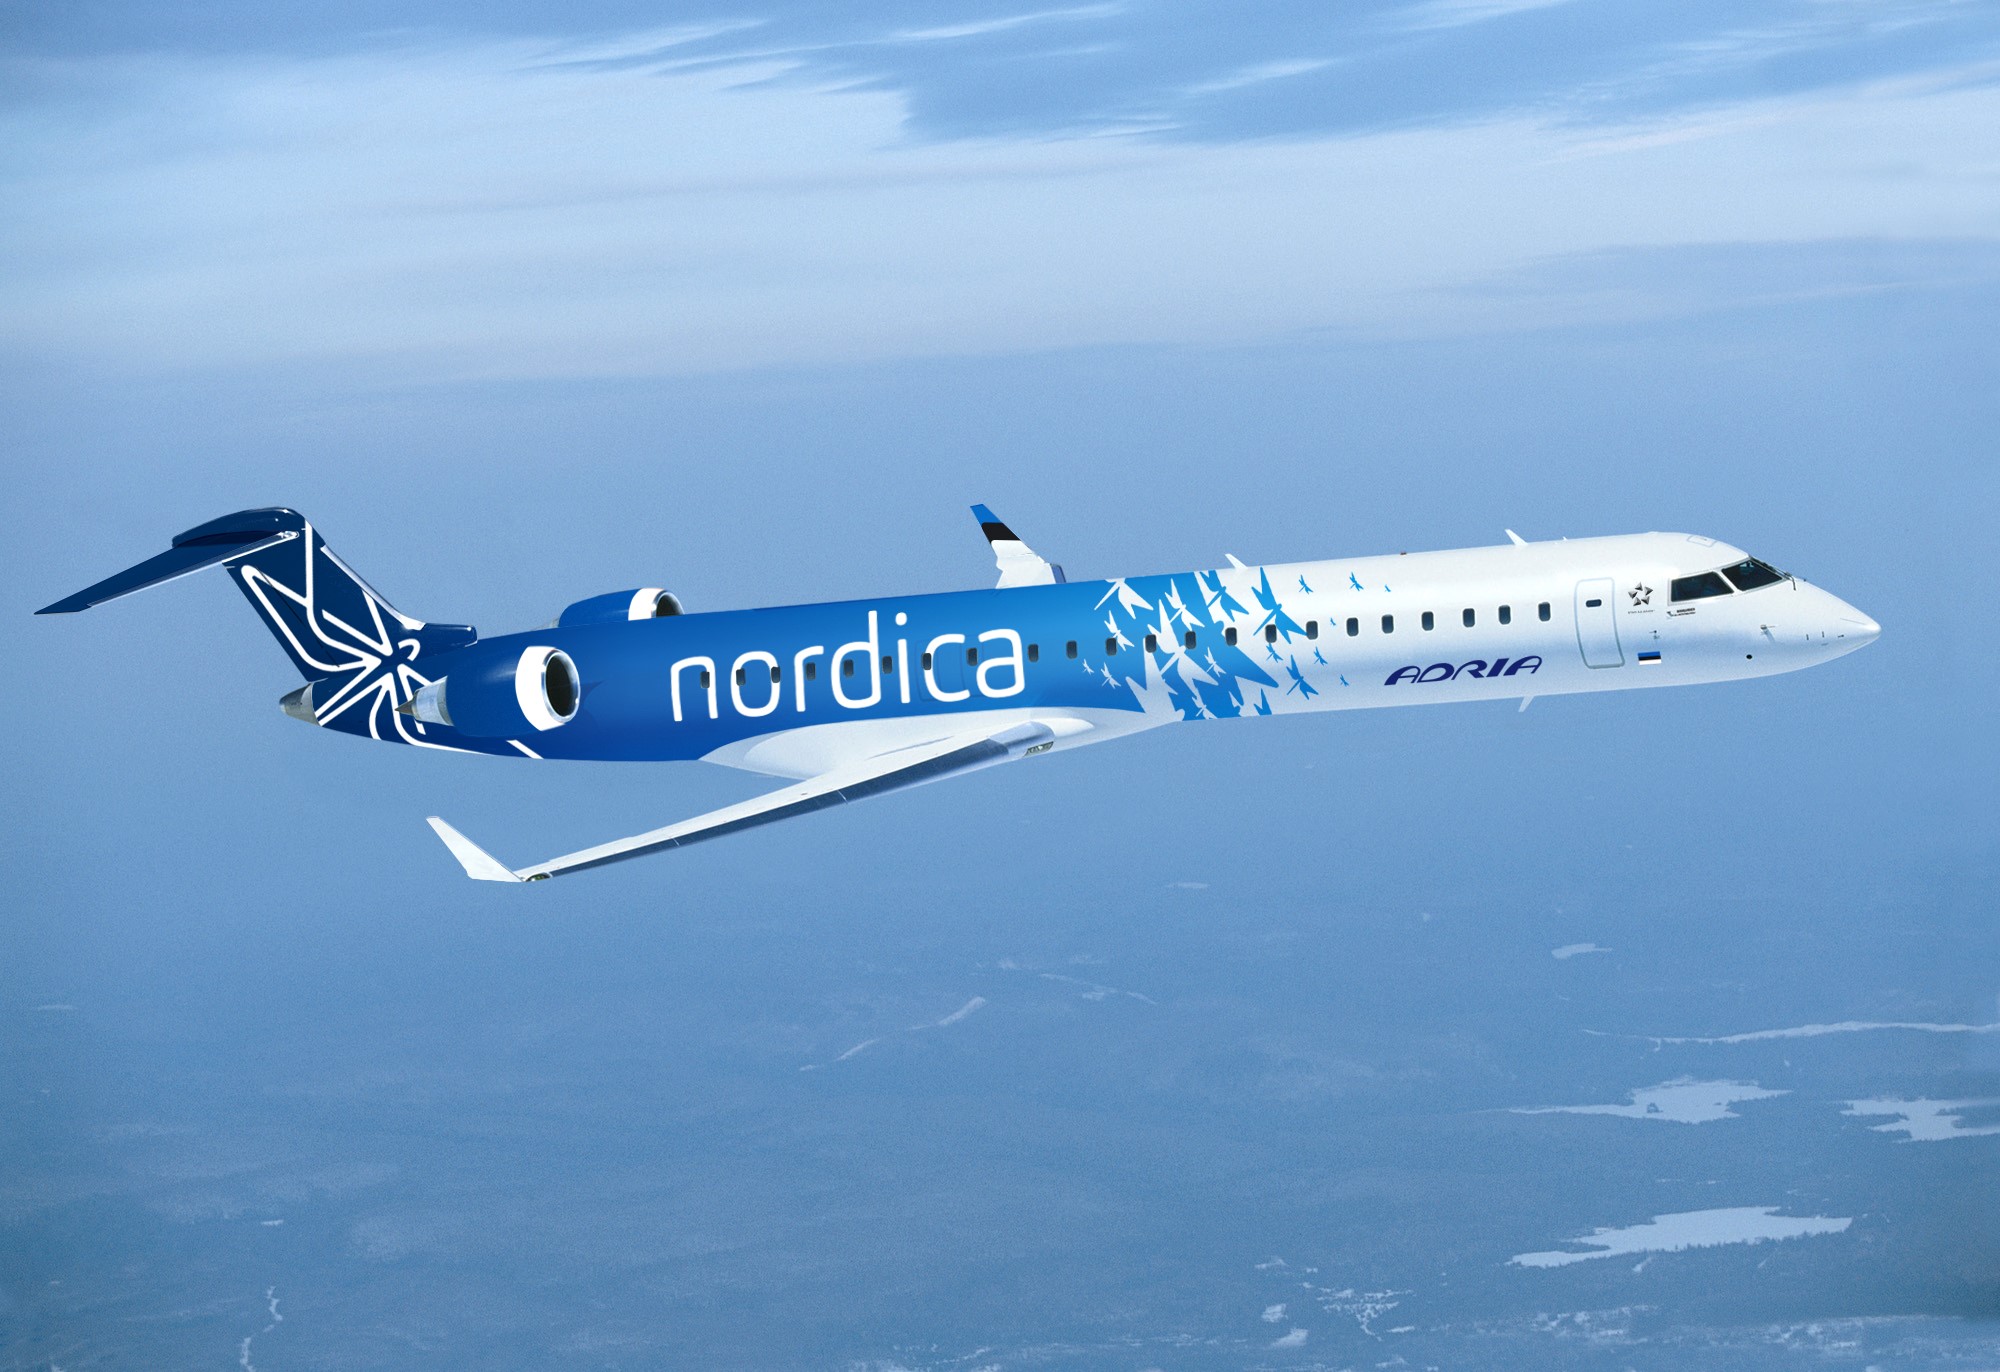 Nordica lennukikujundus 1